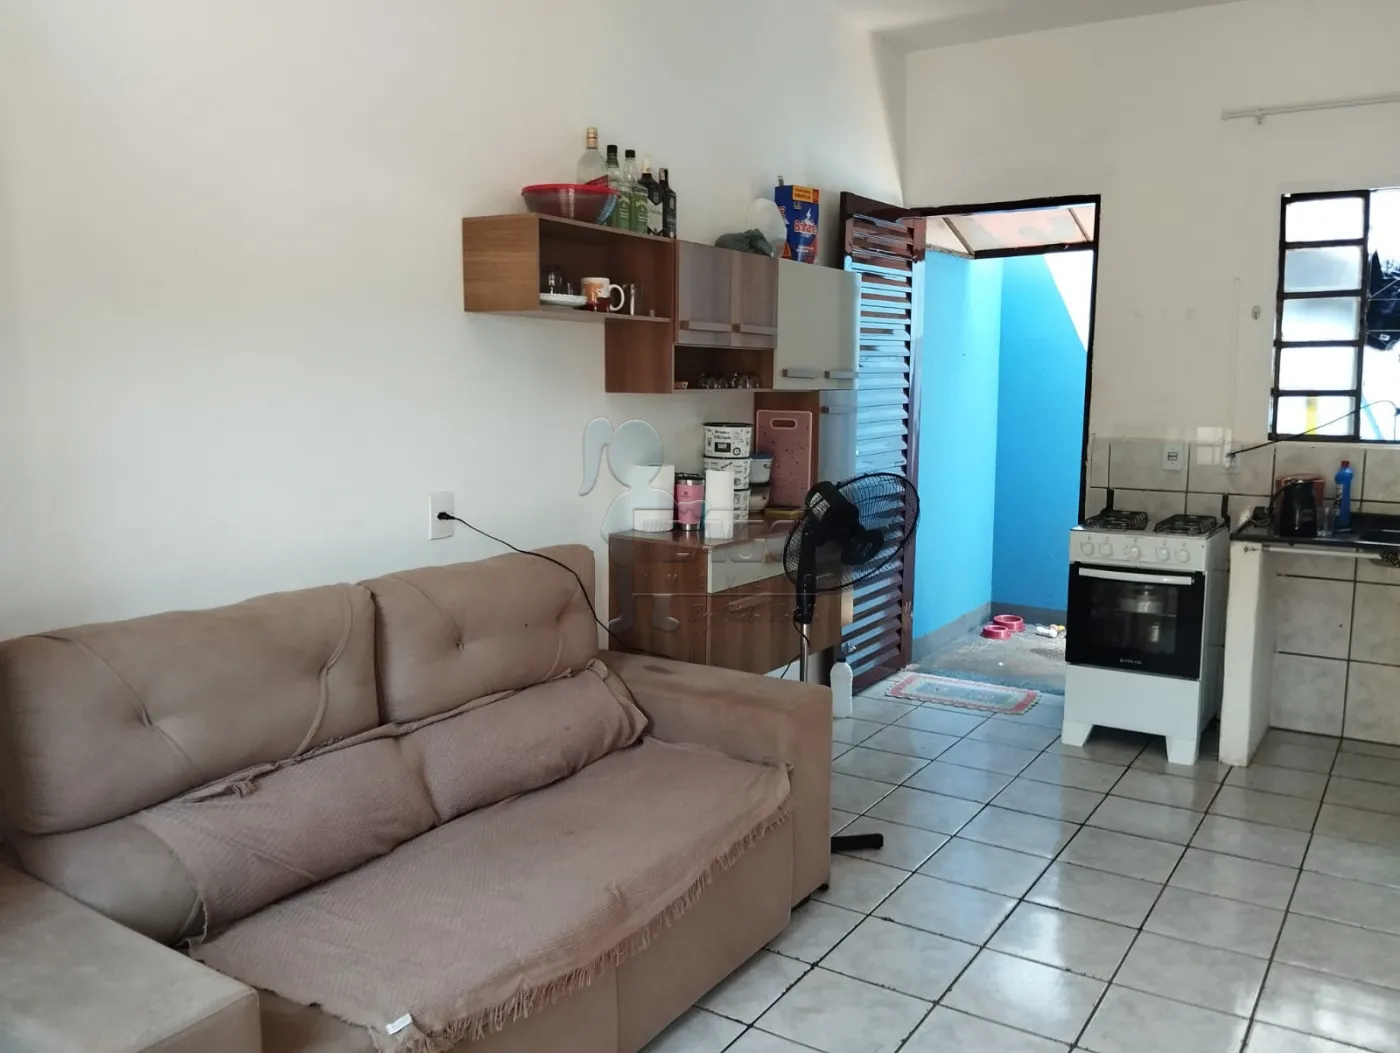 Comprar Casas / Padrão em Ribeirão Preto R$ 490.000,00 - Foto 10